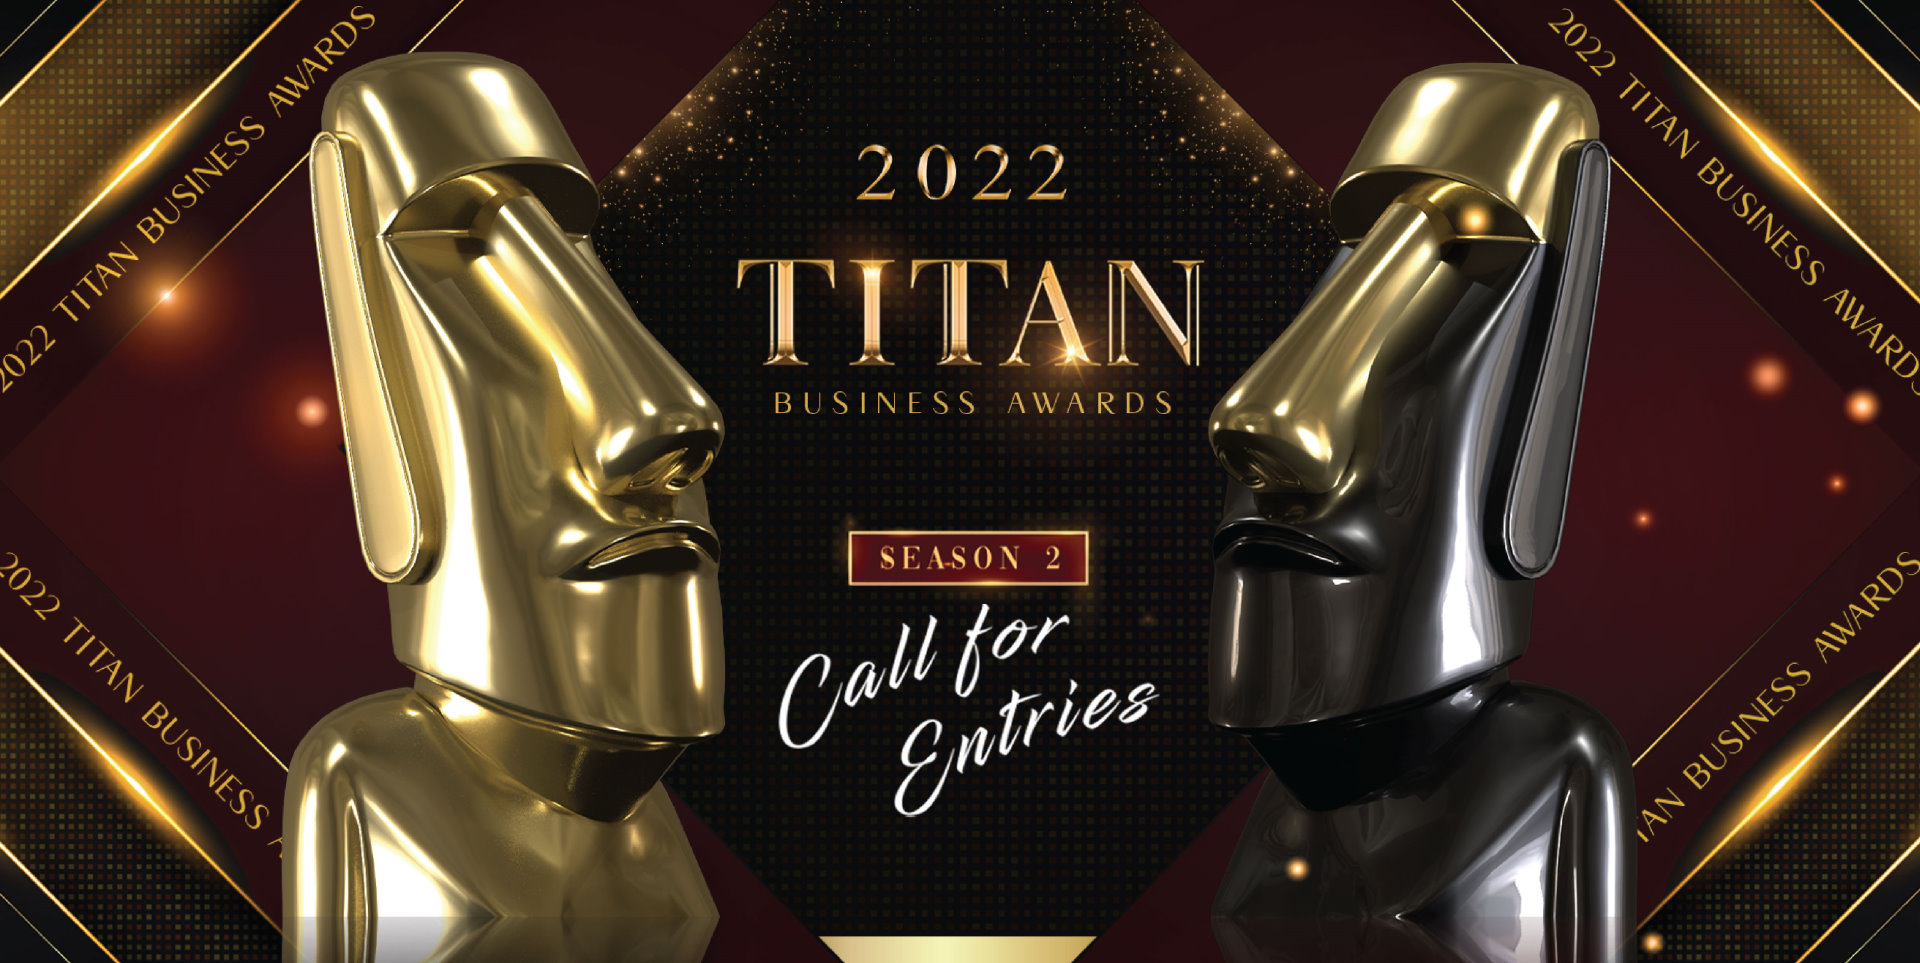 TITAN Business Awards